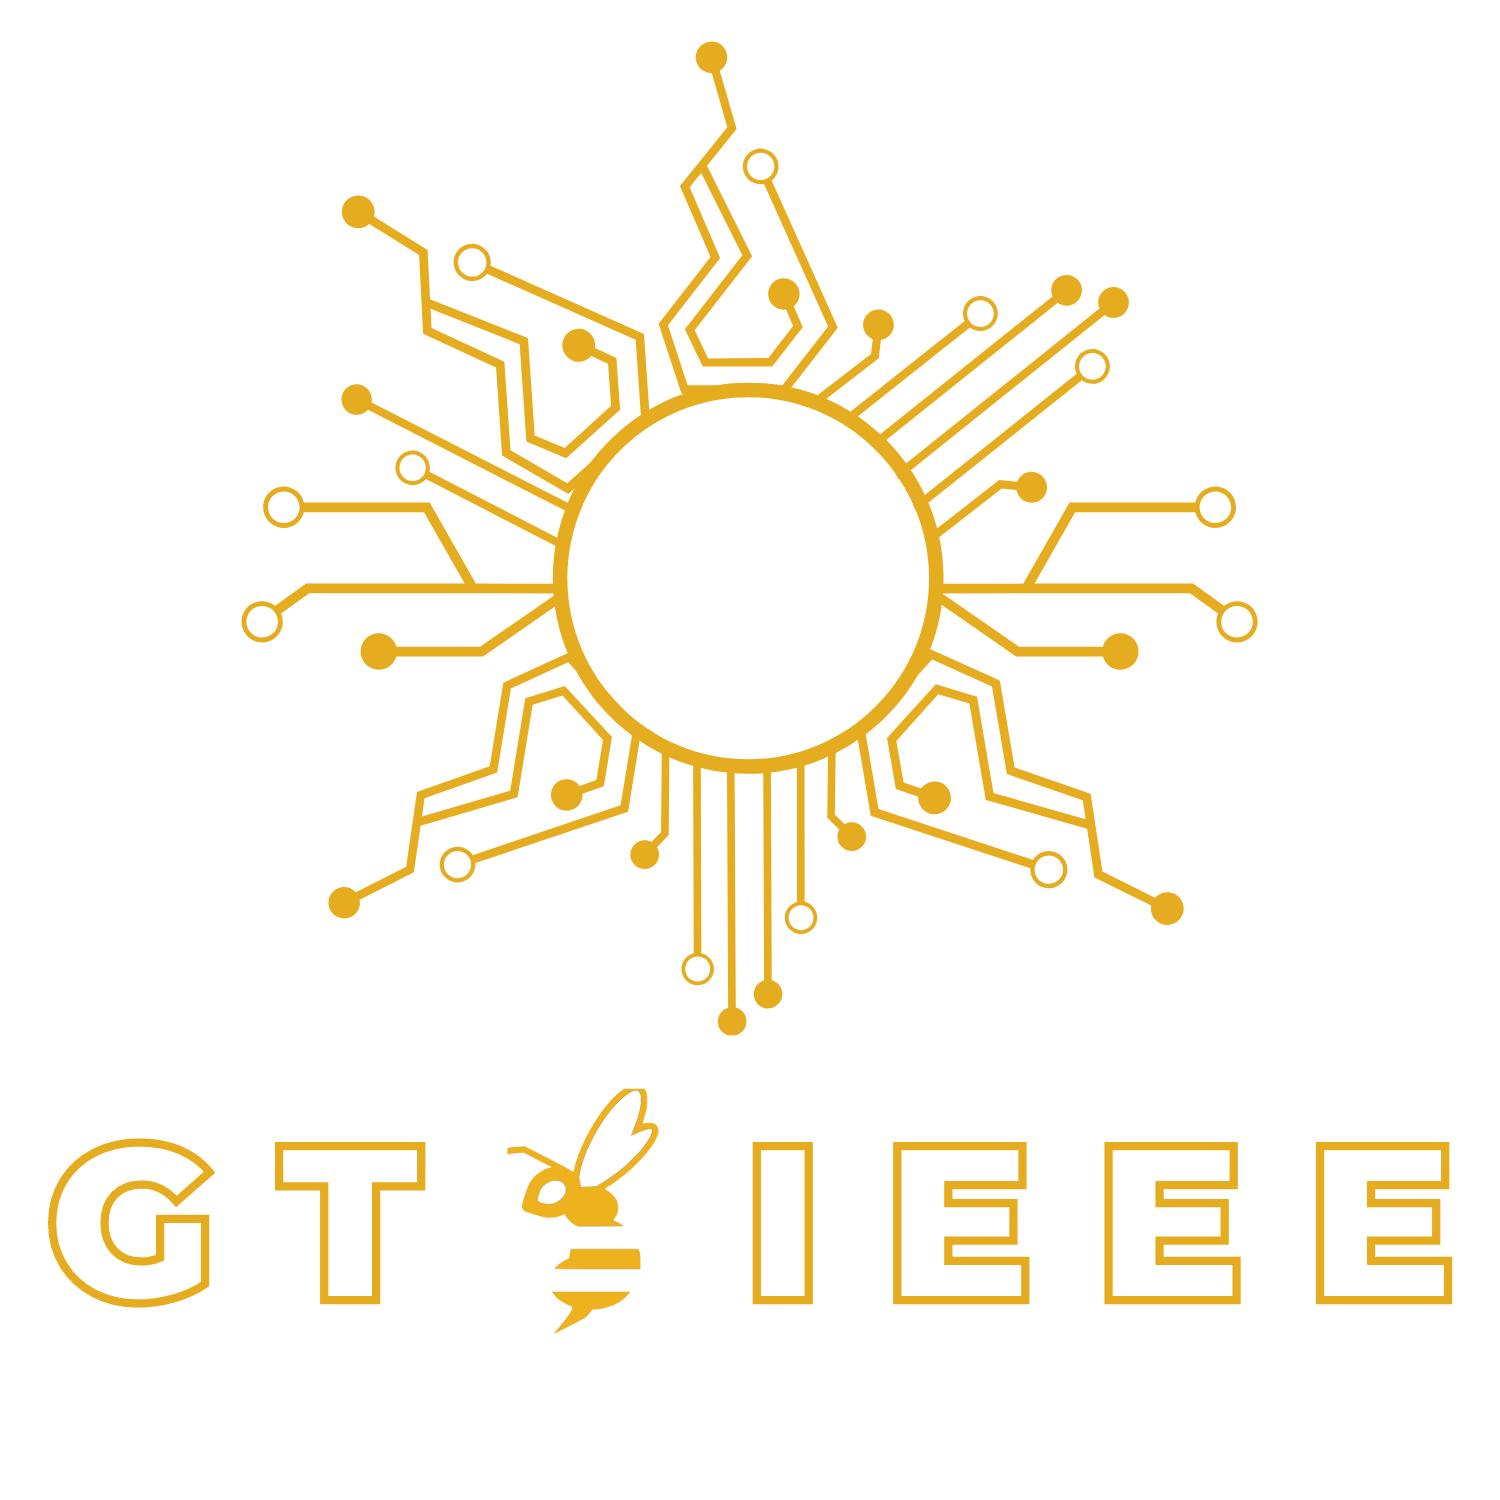 GT IEEE